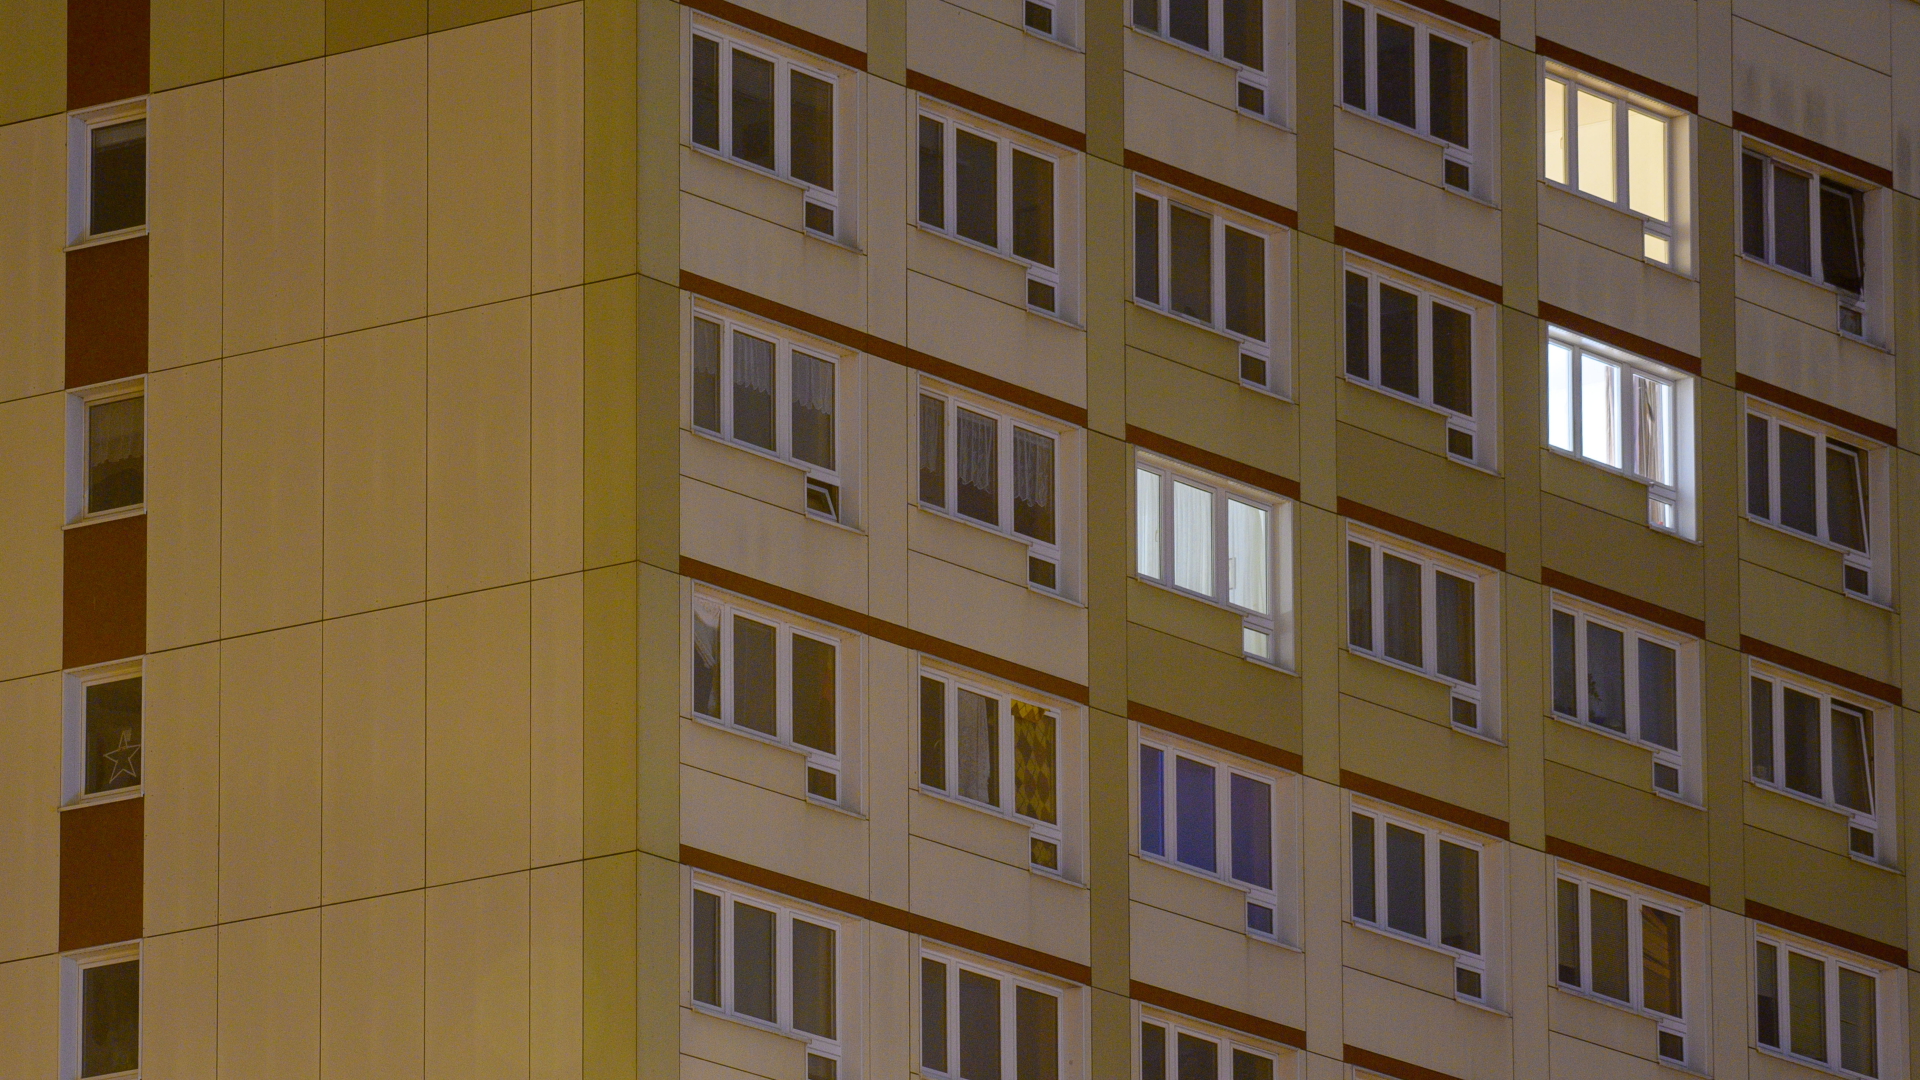 Vereinzelt brennen Lichter in den Fenstern eines Hochhauses. | dpa